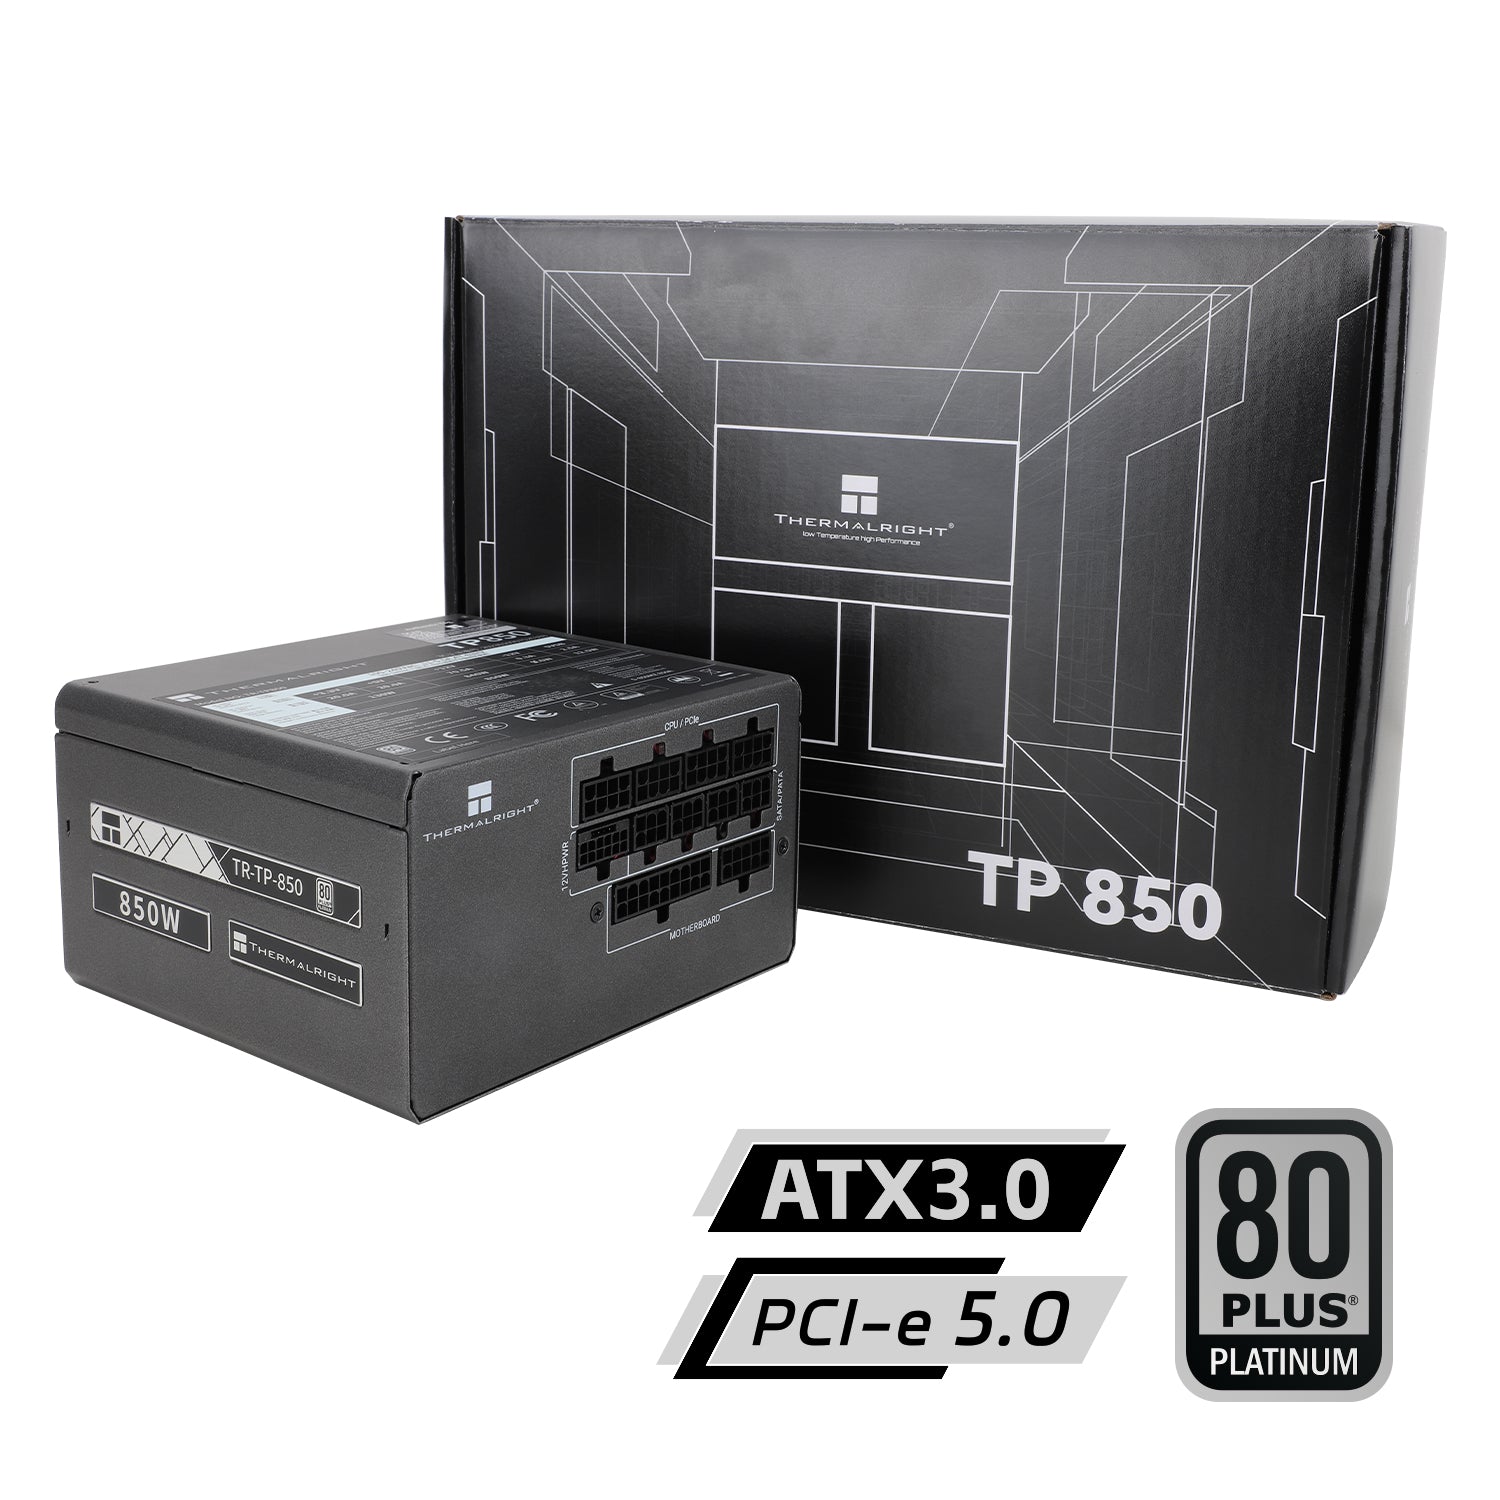 Thermalright 850W TP850 PCIE 5.0 ATX 3.0 80Plus Platinum Full Modular